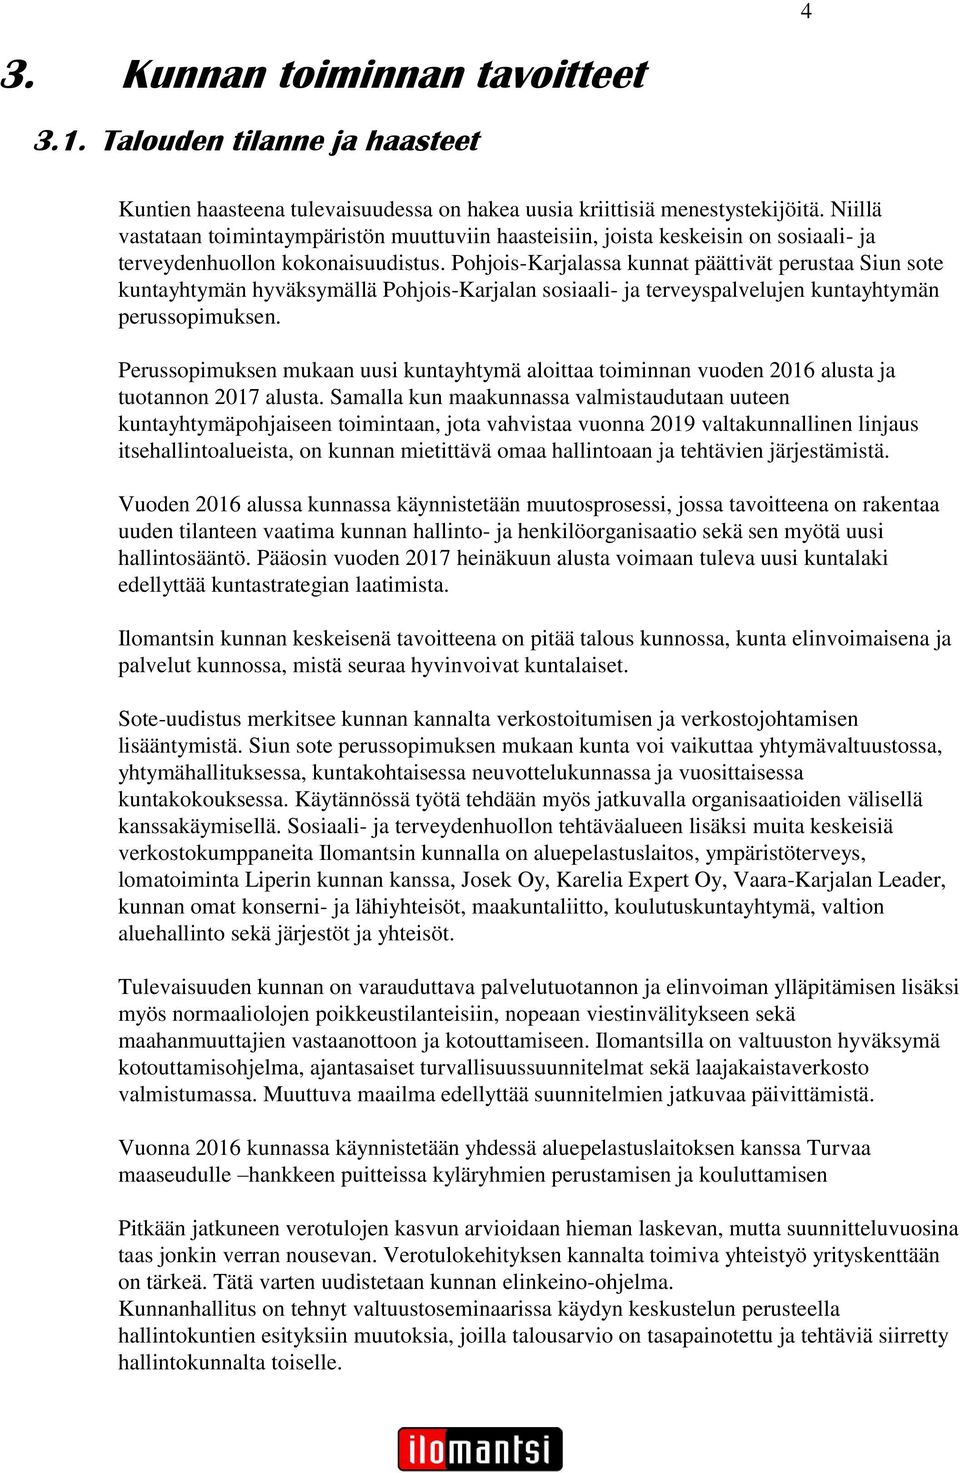 Pohjois-Karjalassa kunnat päättivät perustaa Siun sote kuntayhtymän hyväksymällä Pohjois-Karjalan sosiaali- ja terveyspalvelujen kuntayhtymän perussopimuksen.